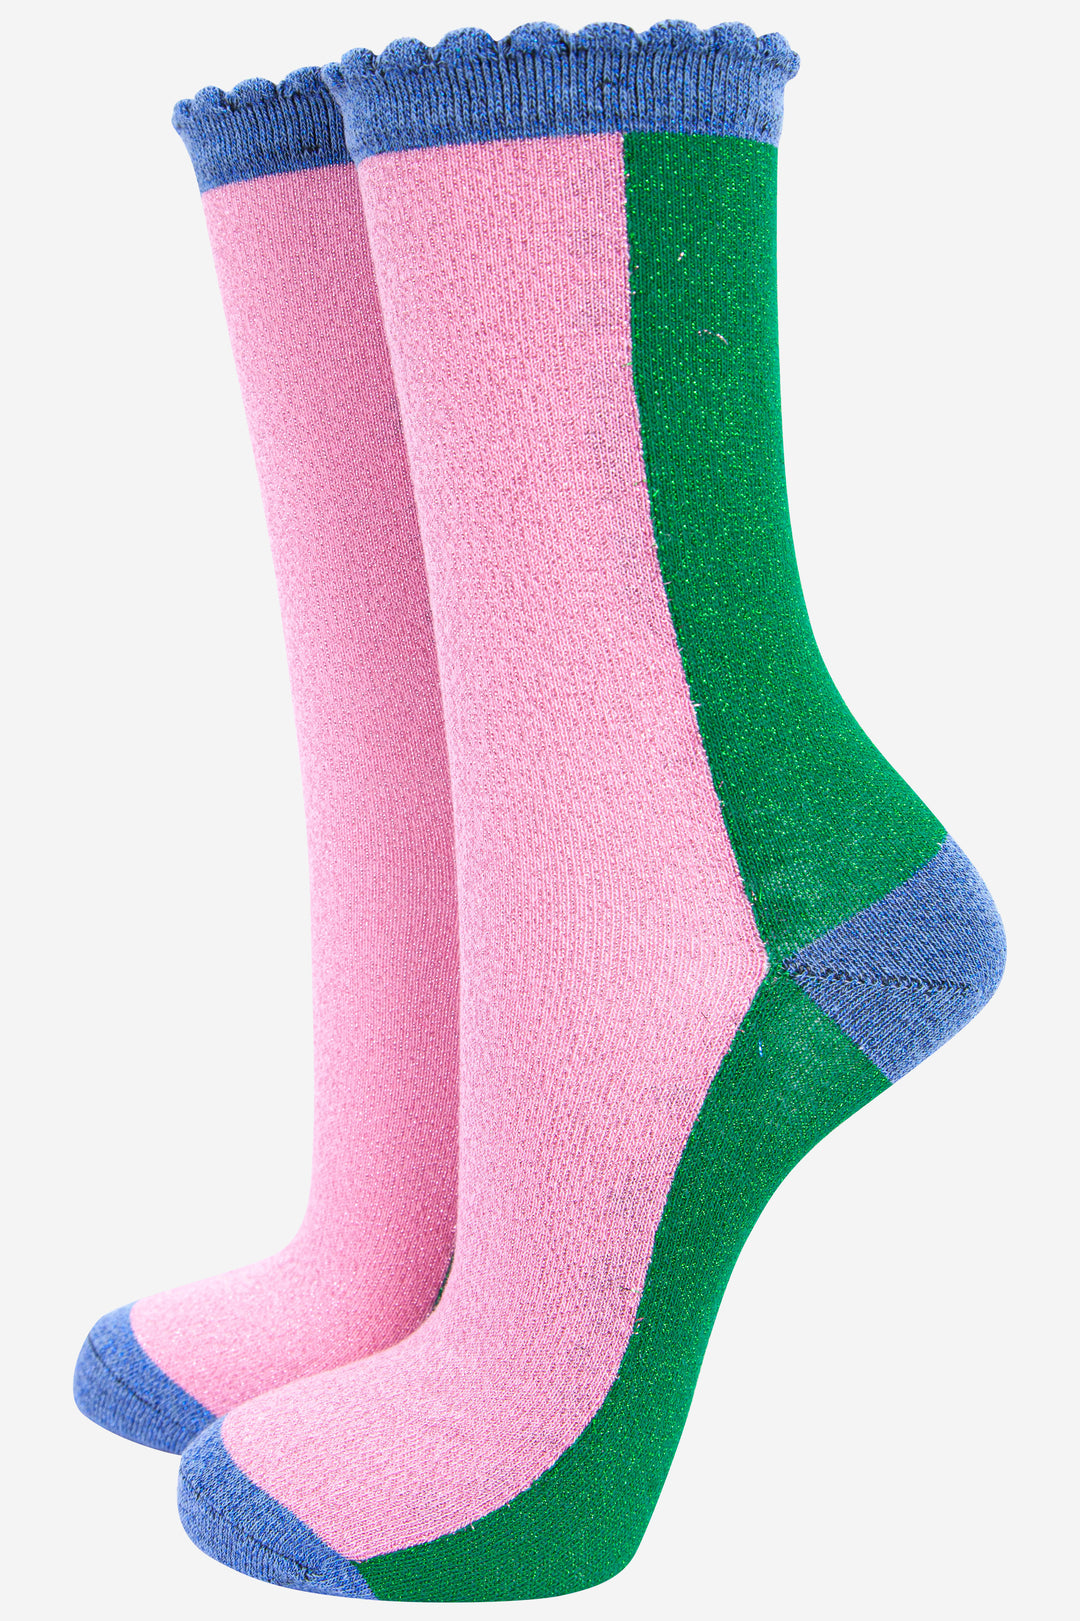 Wholesale Women's Ankle Socks, 3 Colors